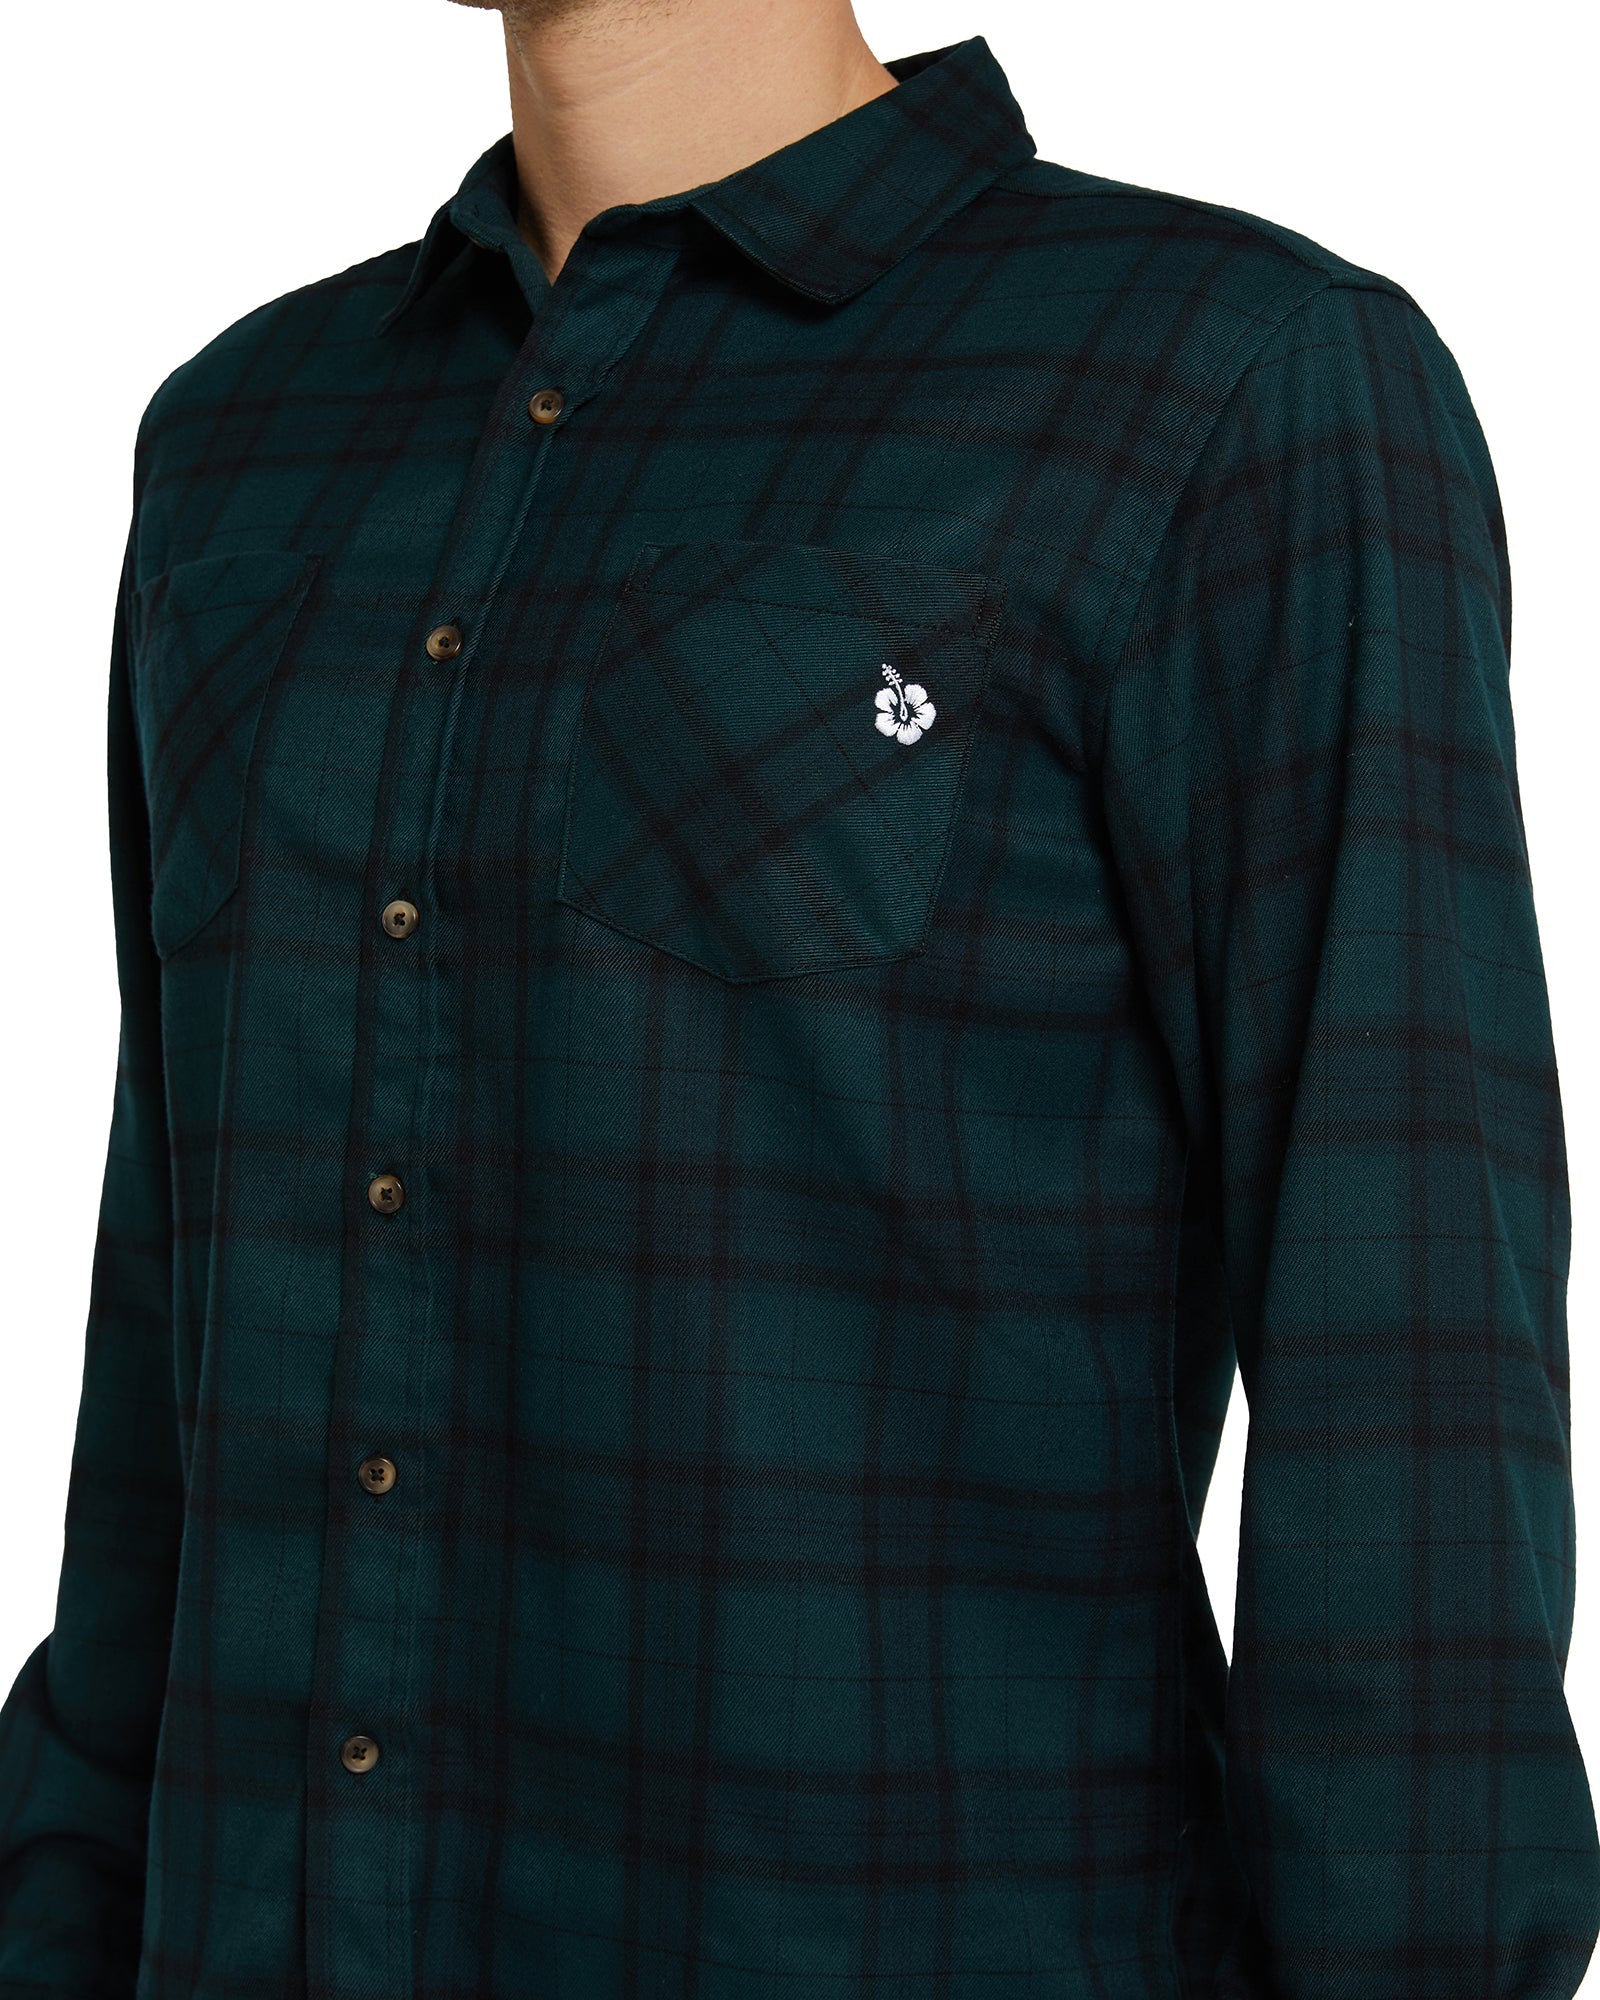 Mens - Flannel Long Sleeve Shirt - Hiker - Navy/Green